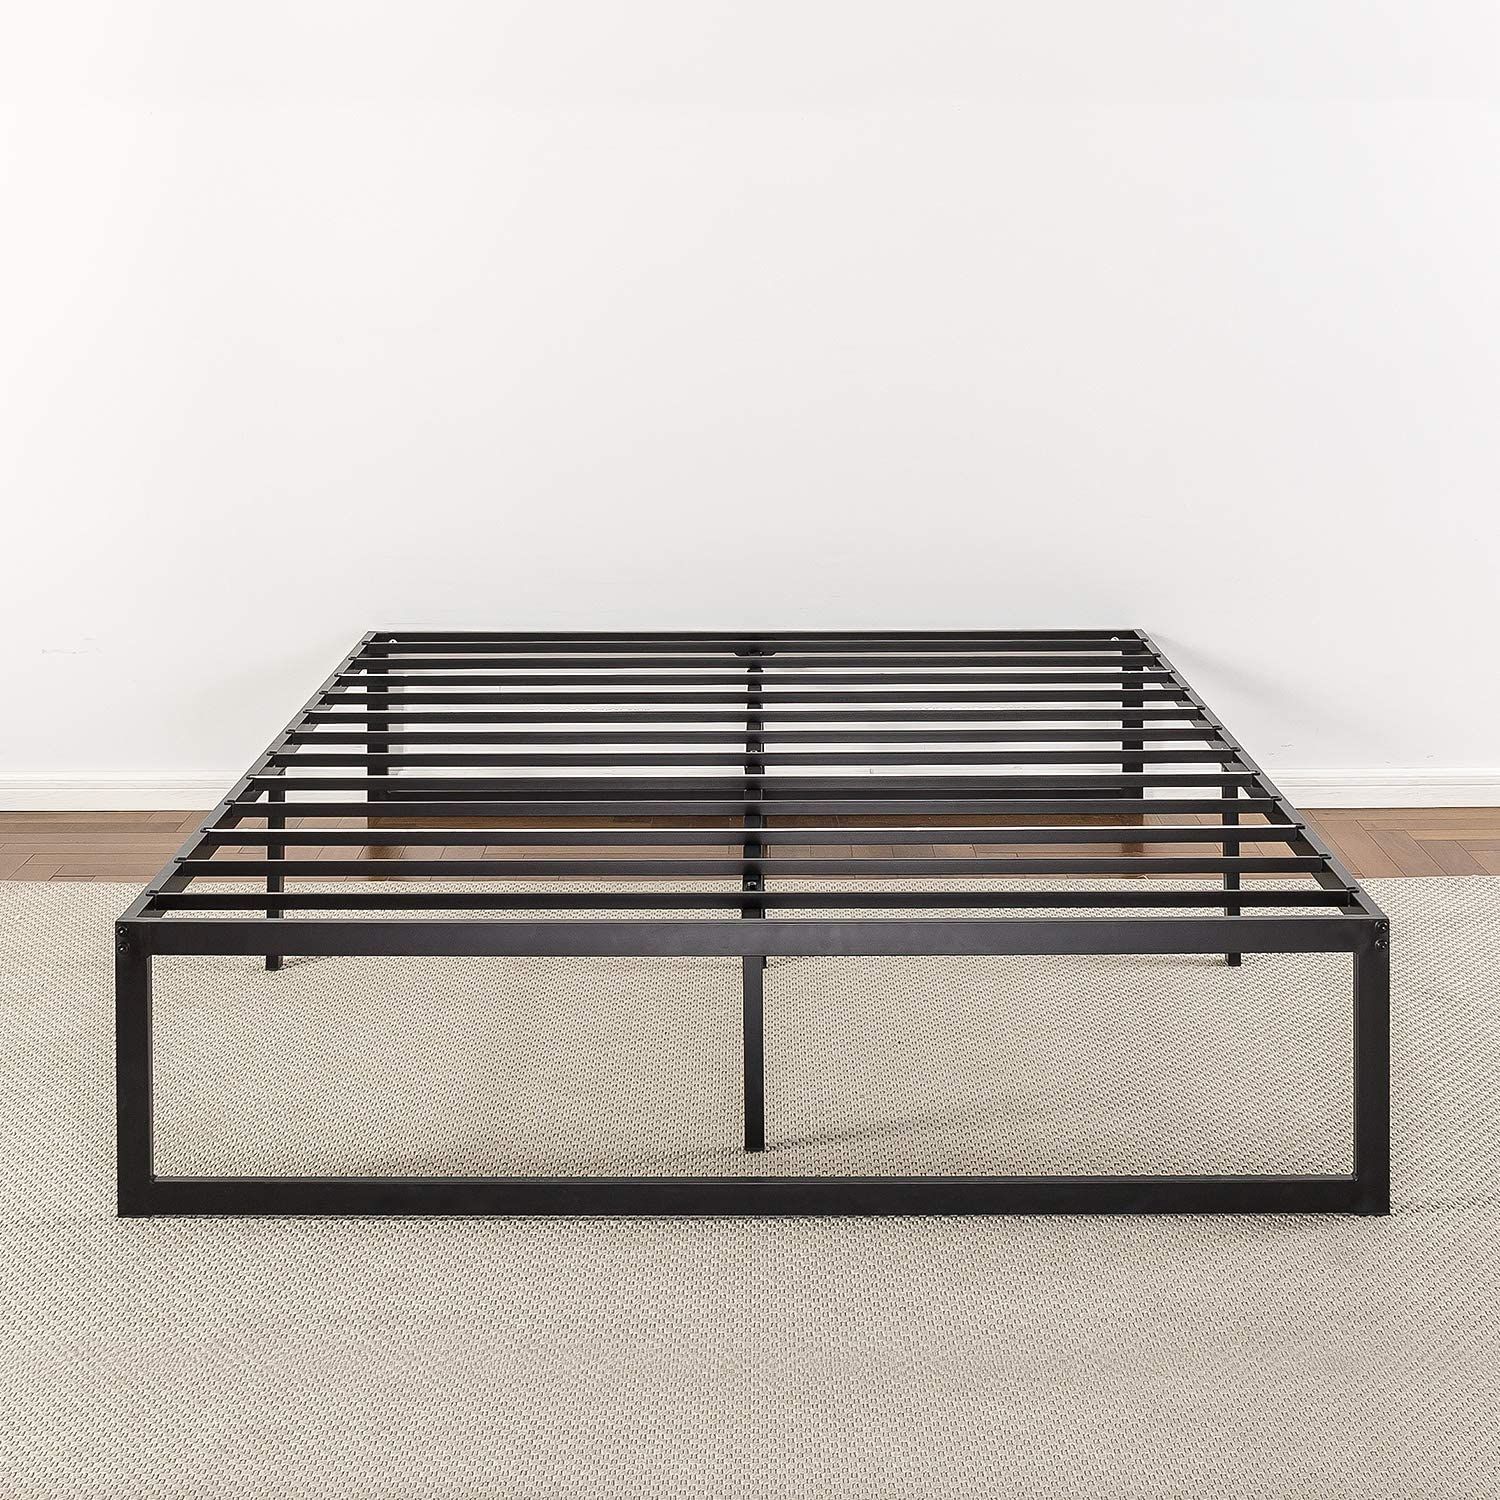 19 Best Metal Bed Frames 2020 The, Metal Bed Frame Support Bar